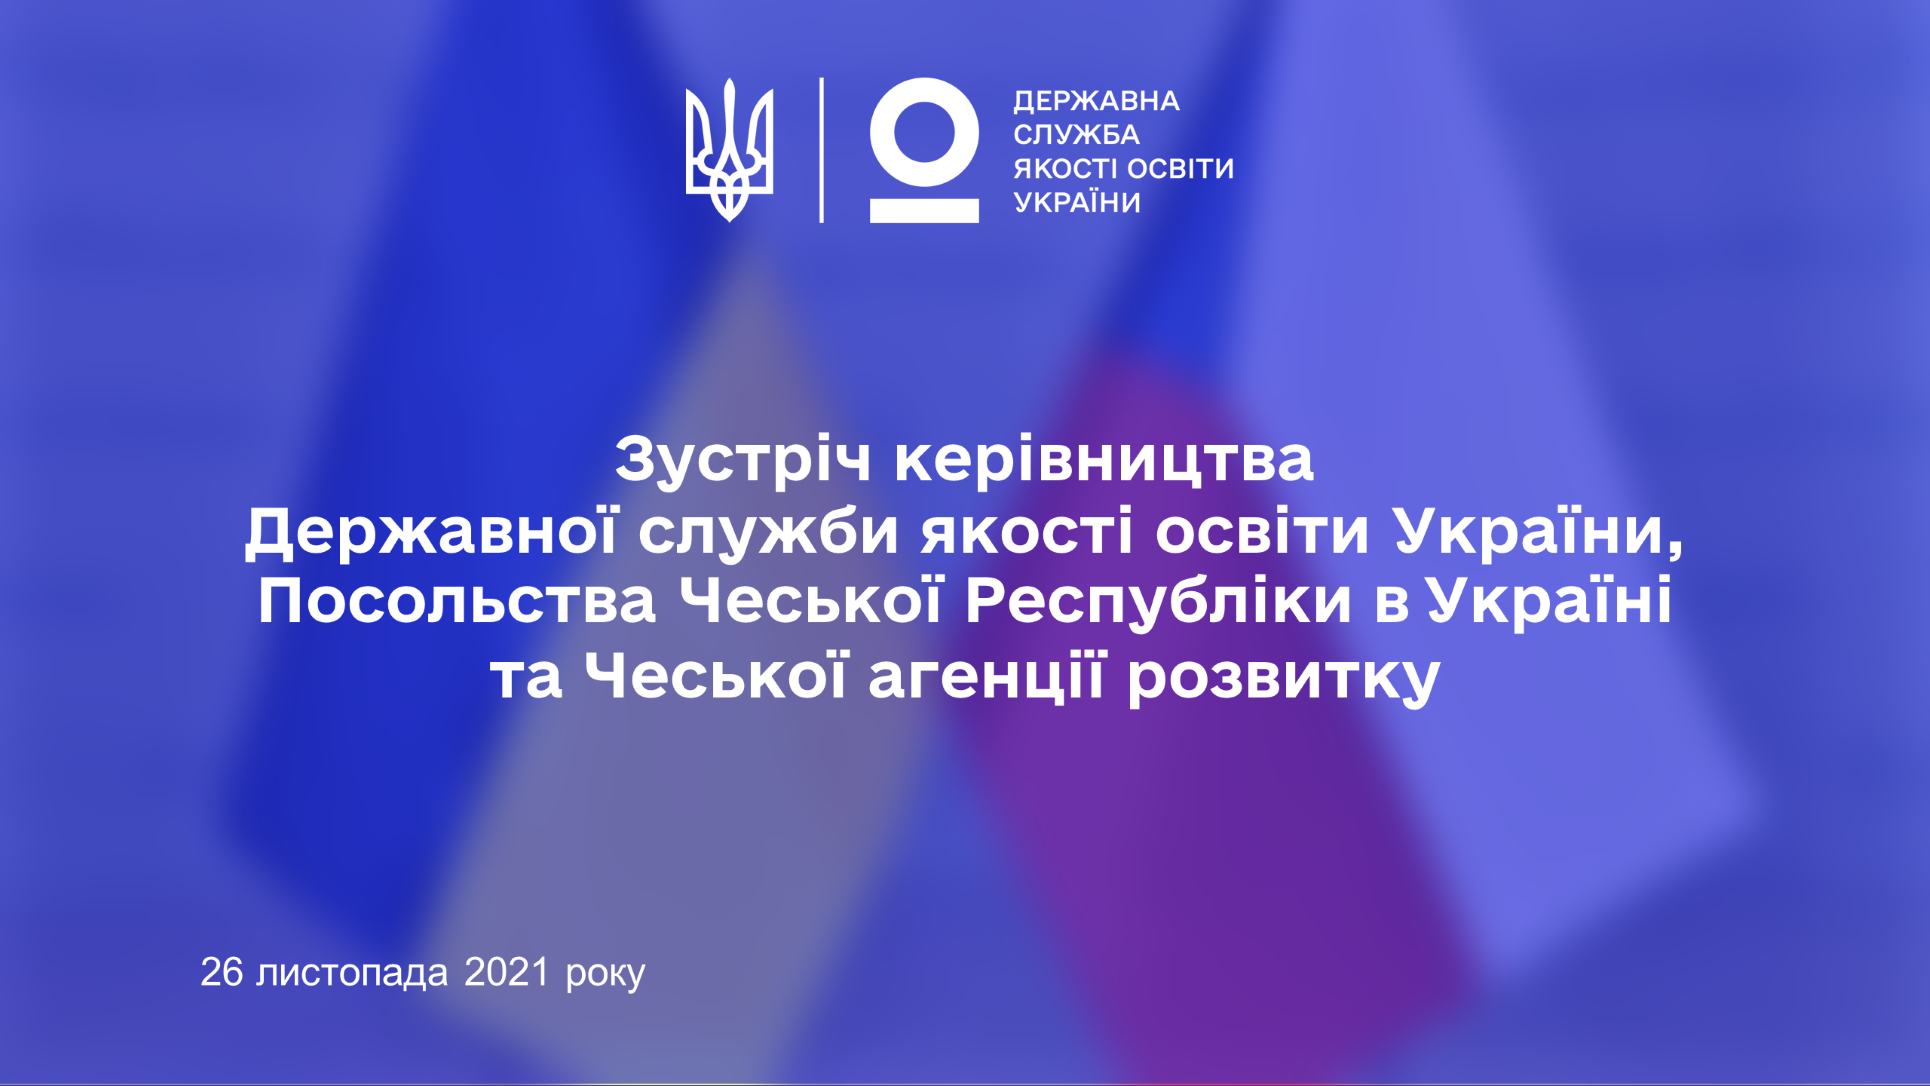 26 листопада 2021 року відбудеться зустріч керівництва Державної служби якості освіти України, Посольства Чеської Республіки в Україні та Чеської агенції розвитку